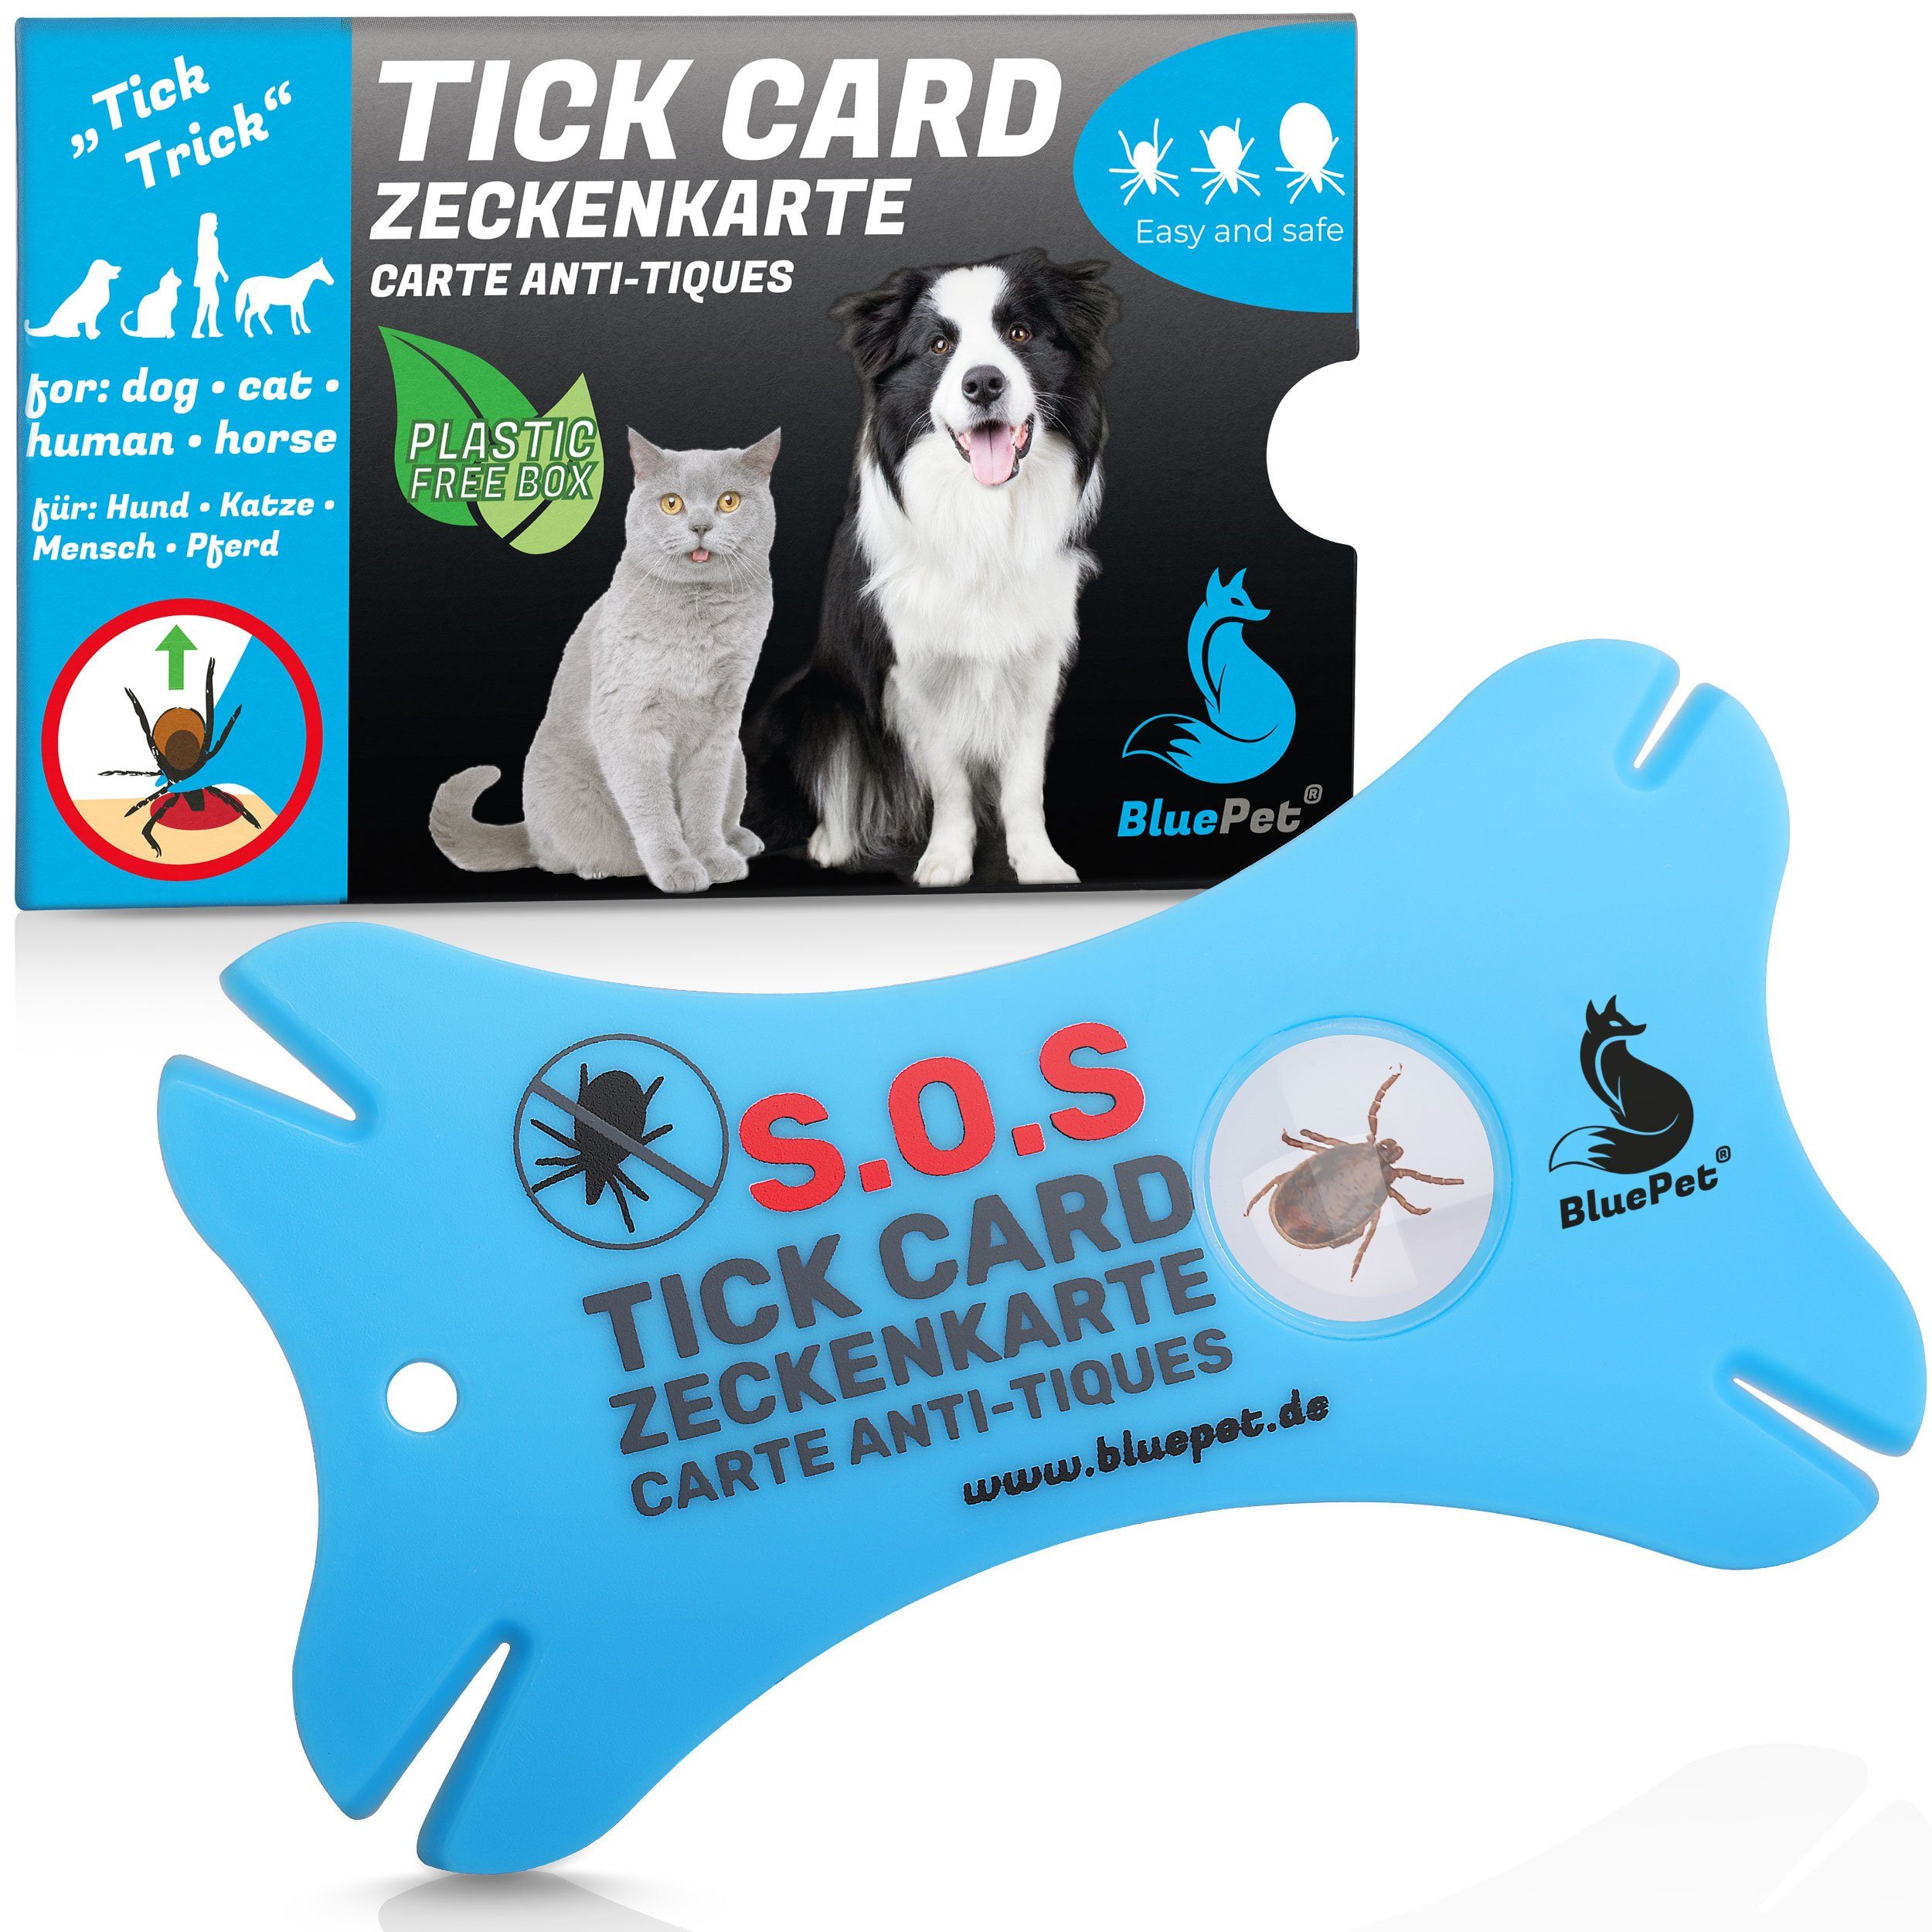 Zeckenkarte Menschen und für Zeckenentfernung im Tiere Zeckenpinzette Scheckkartenformat, BluePet mit Lupe